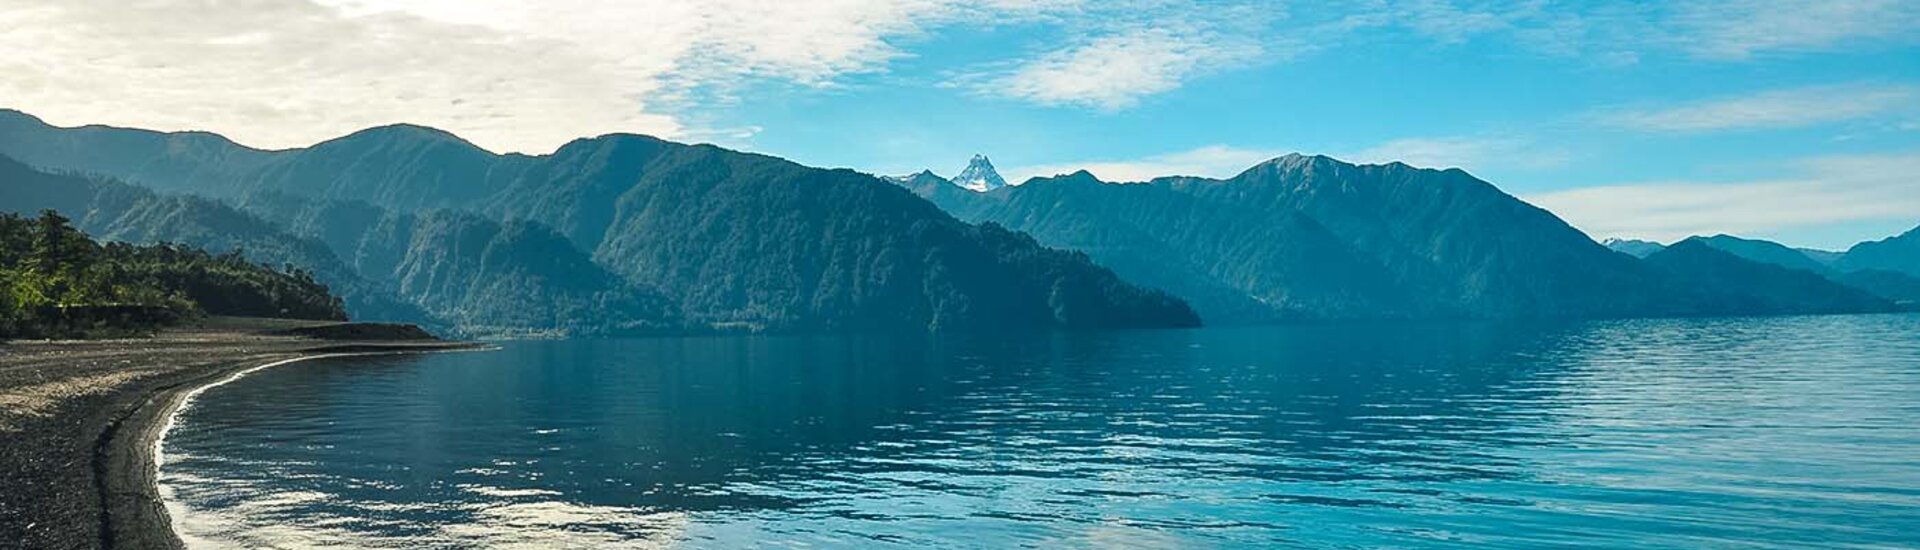 Lago Todos Los Santos im Vicente Perez Rosales Nationalpark, Chile